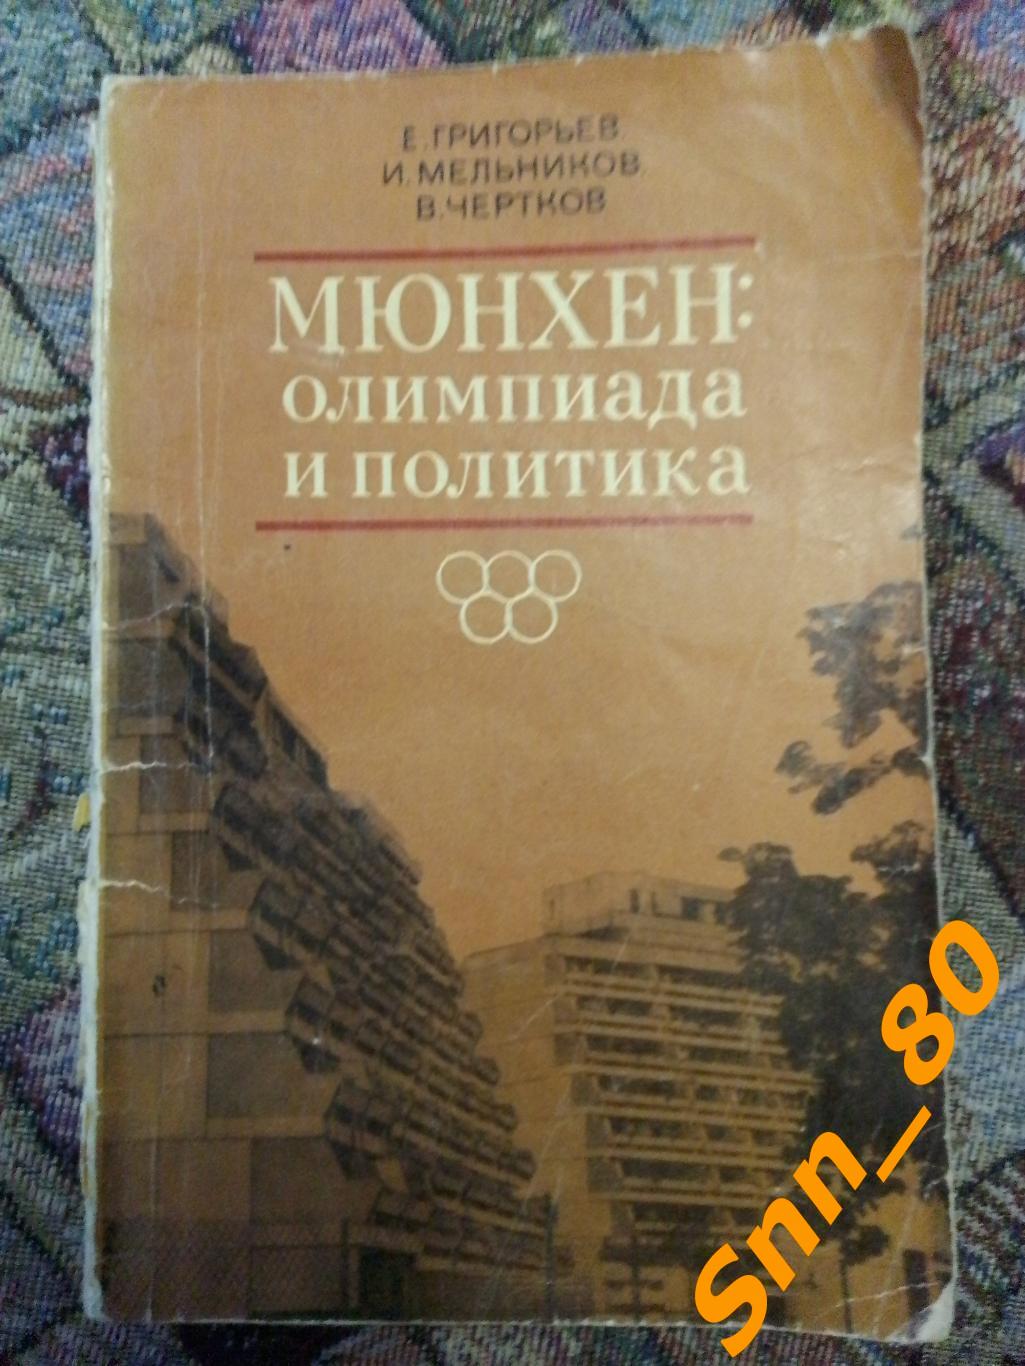 Мюнхен: Олимпиада и политика Е.Григорьев И.Мельников В.Чертков 1974